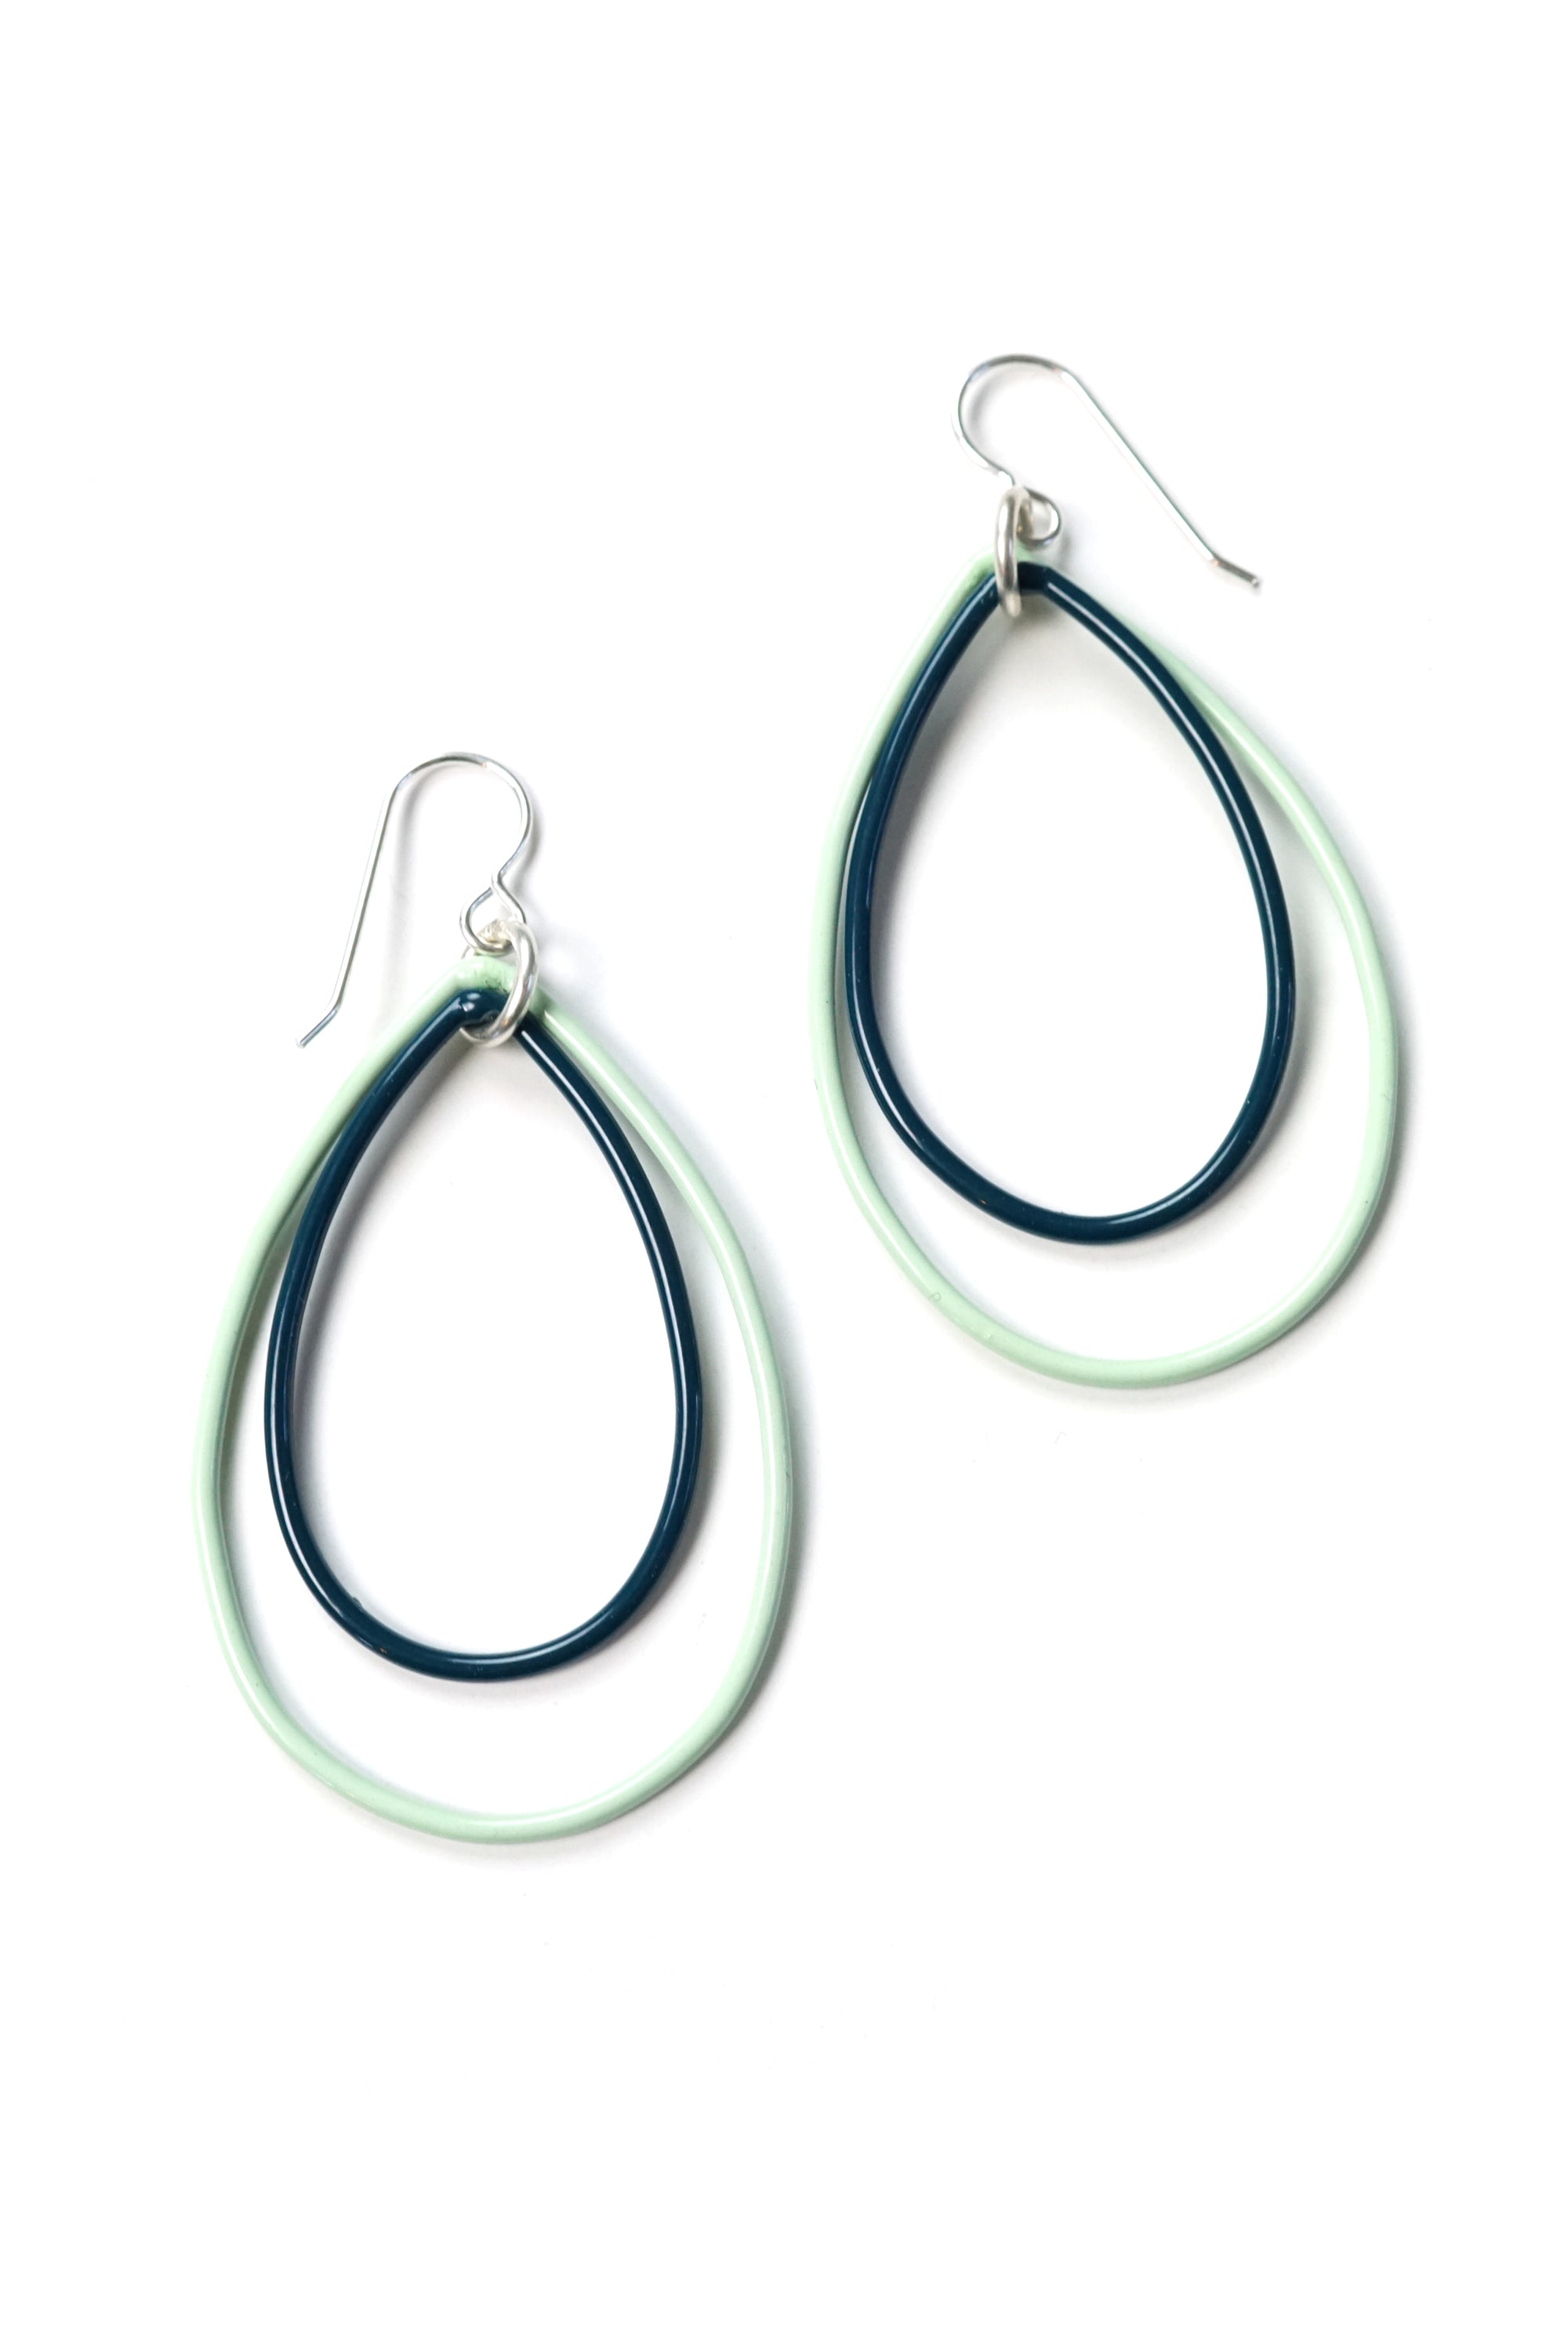 Eva earrings in Soft Mint and Deep Ocean